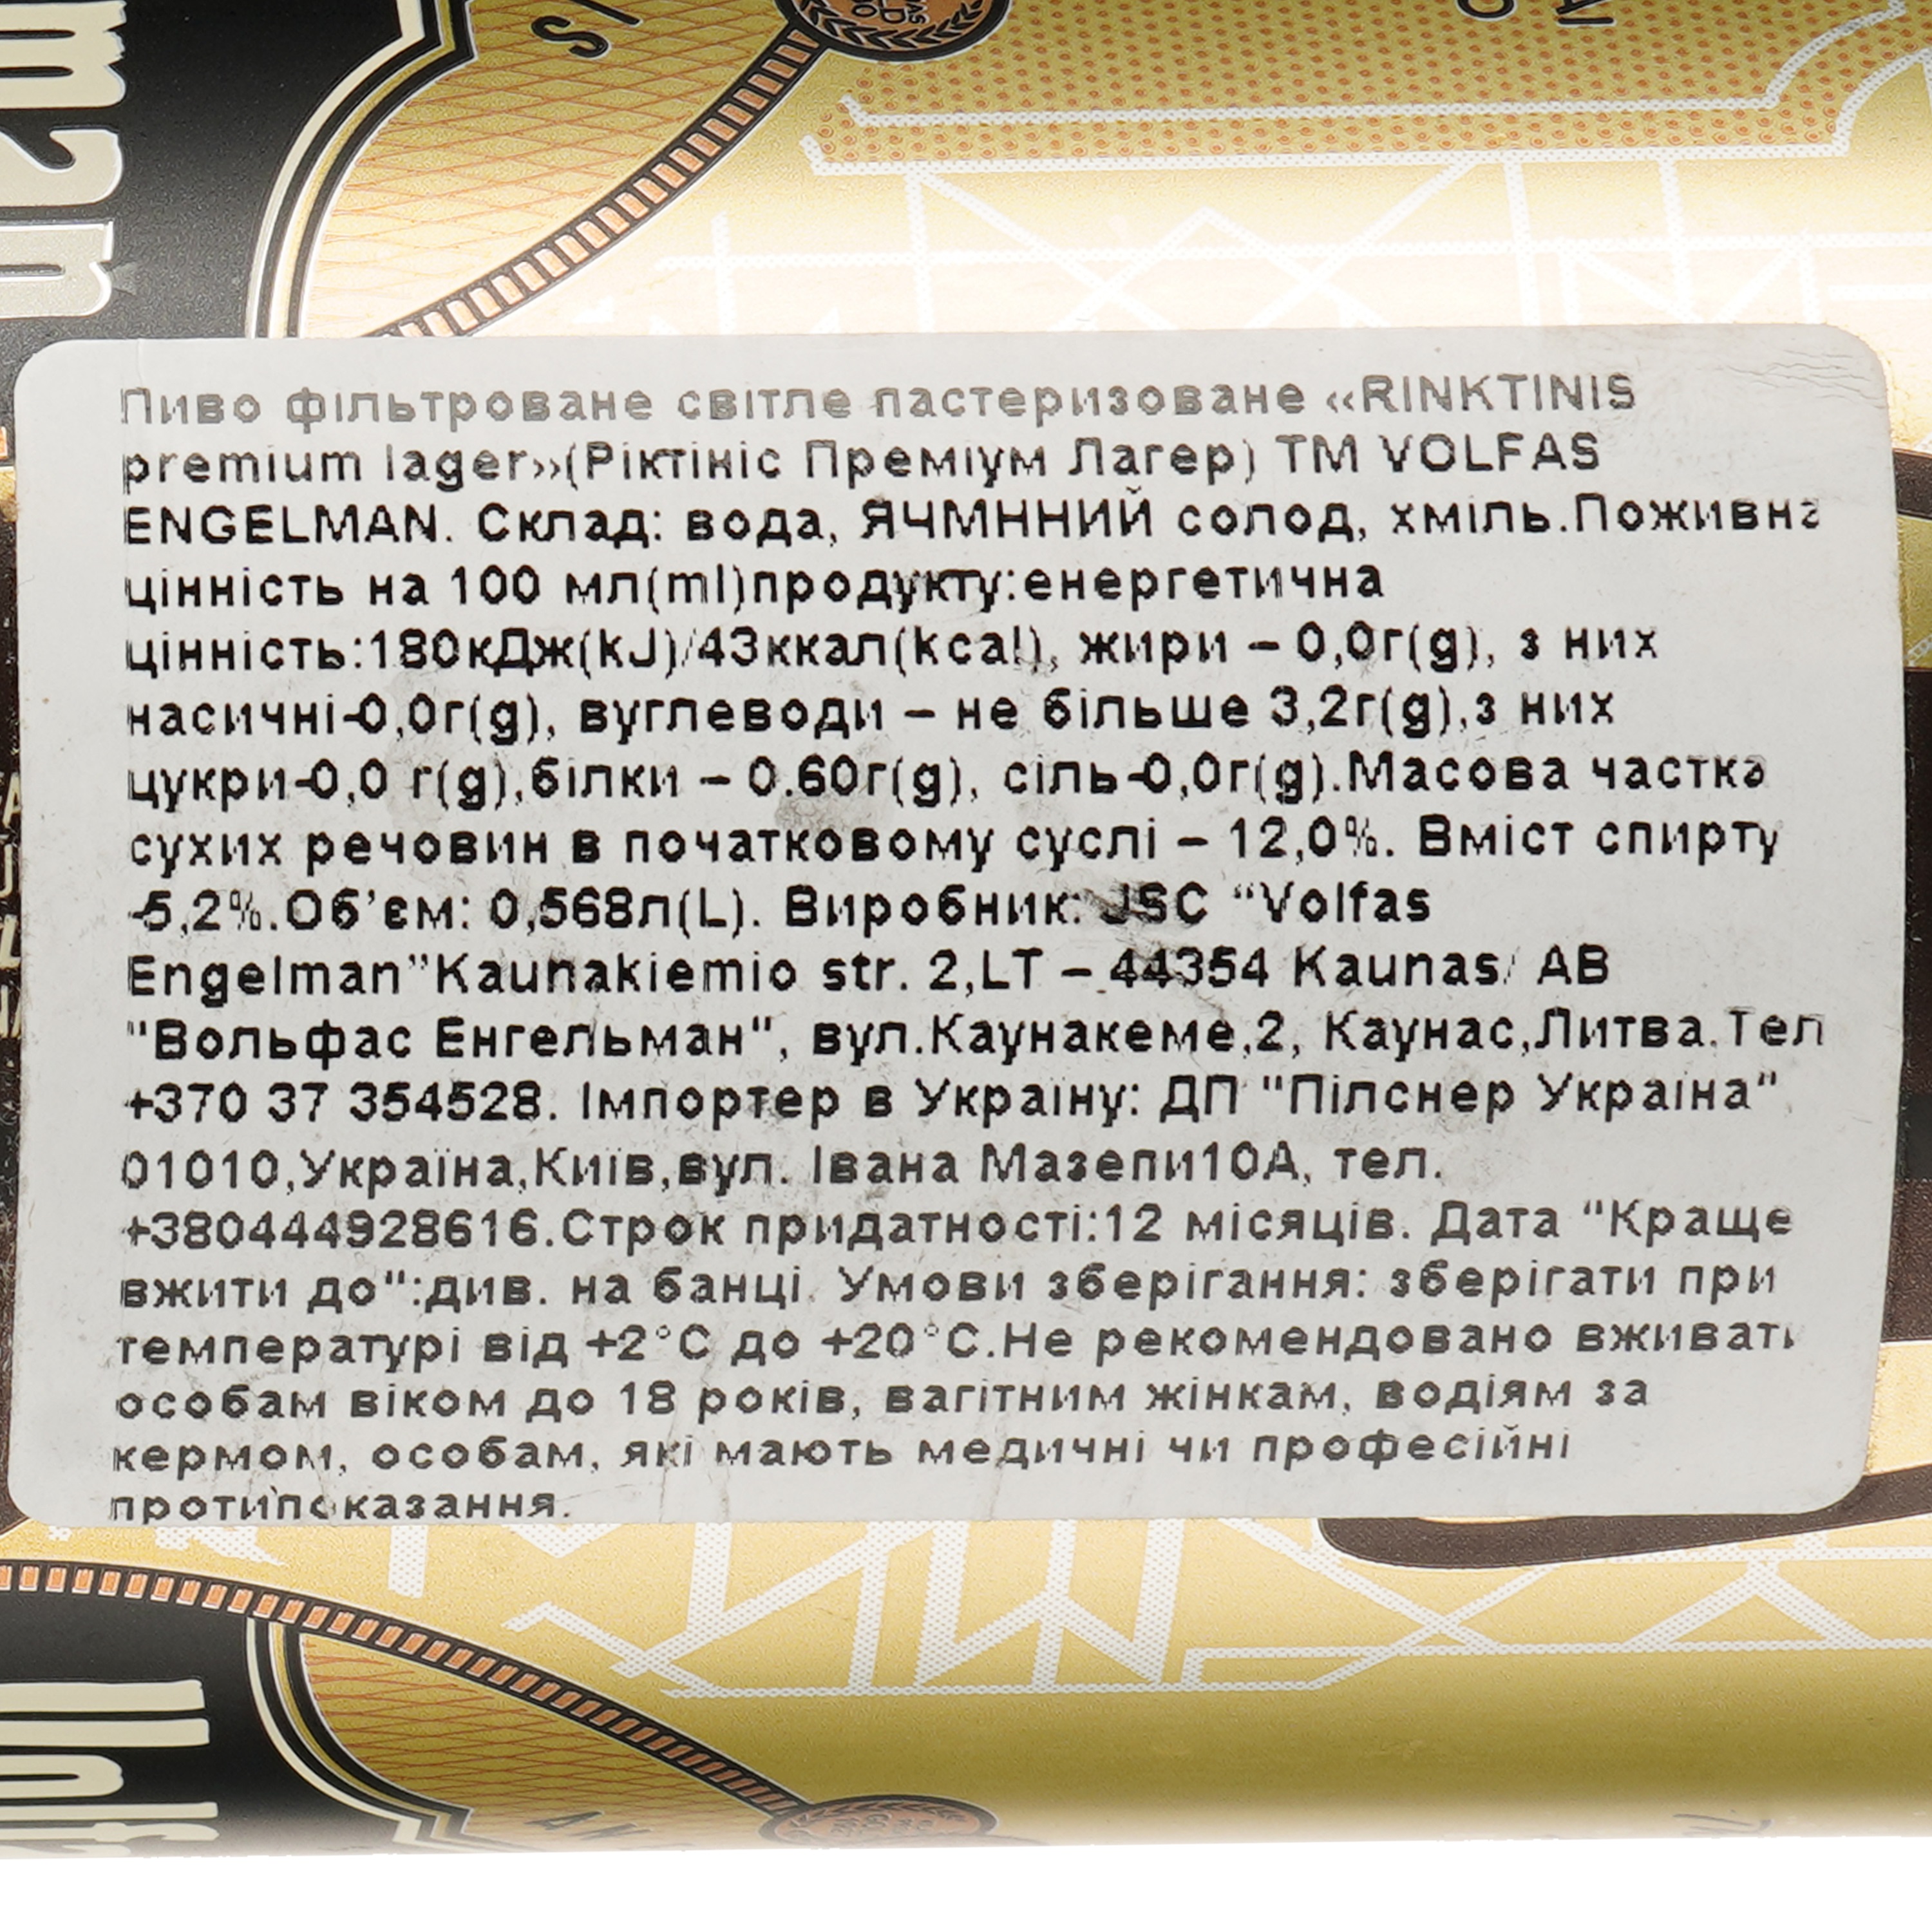 Пиво Volfas Engelman Rinktinis светлое 5.2% 4 шт. х 0.568 л ж/б - фото 4